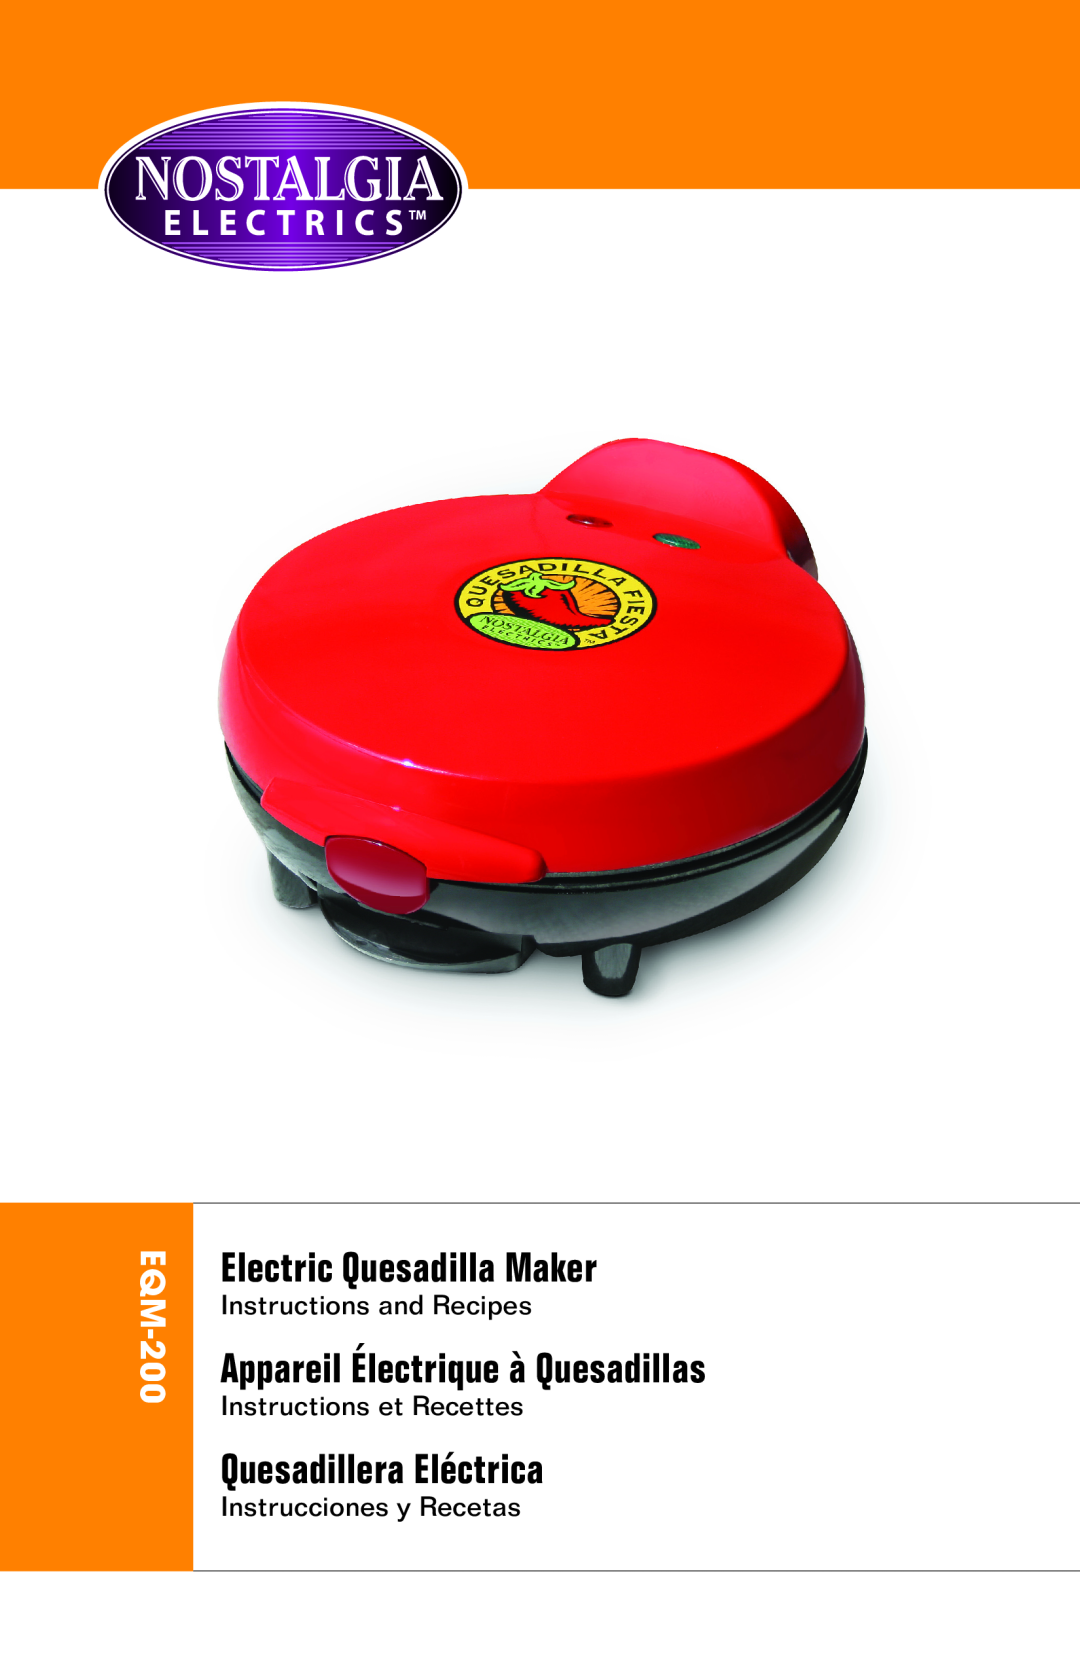 Nostalgia Electrics EQM-200 manual Electric Quesadilla Maker, Appareil Électrique à Quesadillas, Quesadillera Eléctrica 